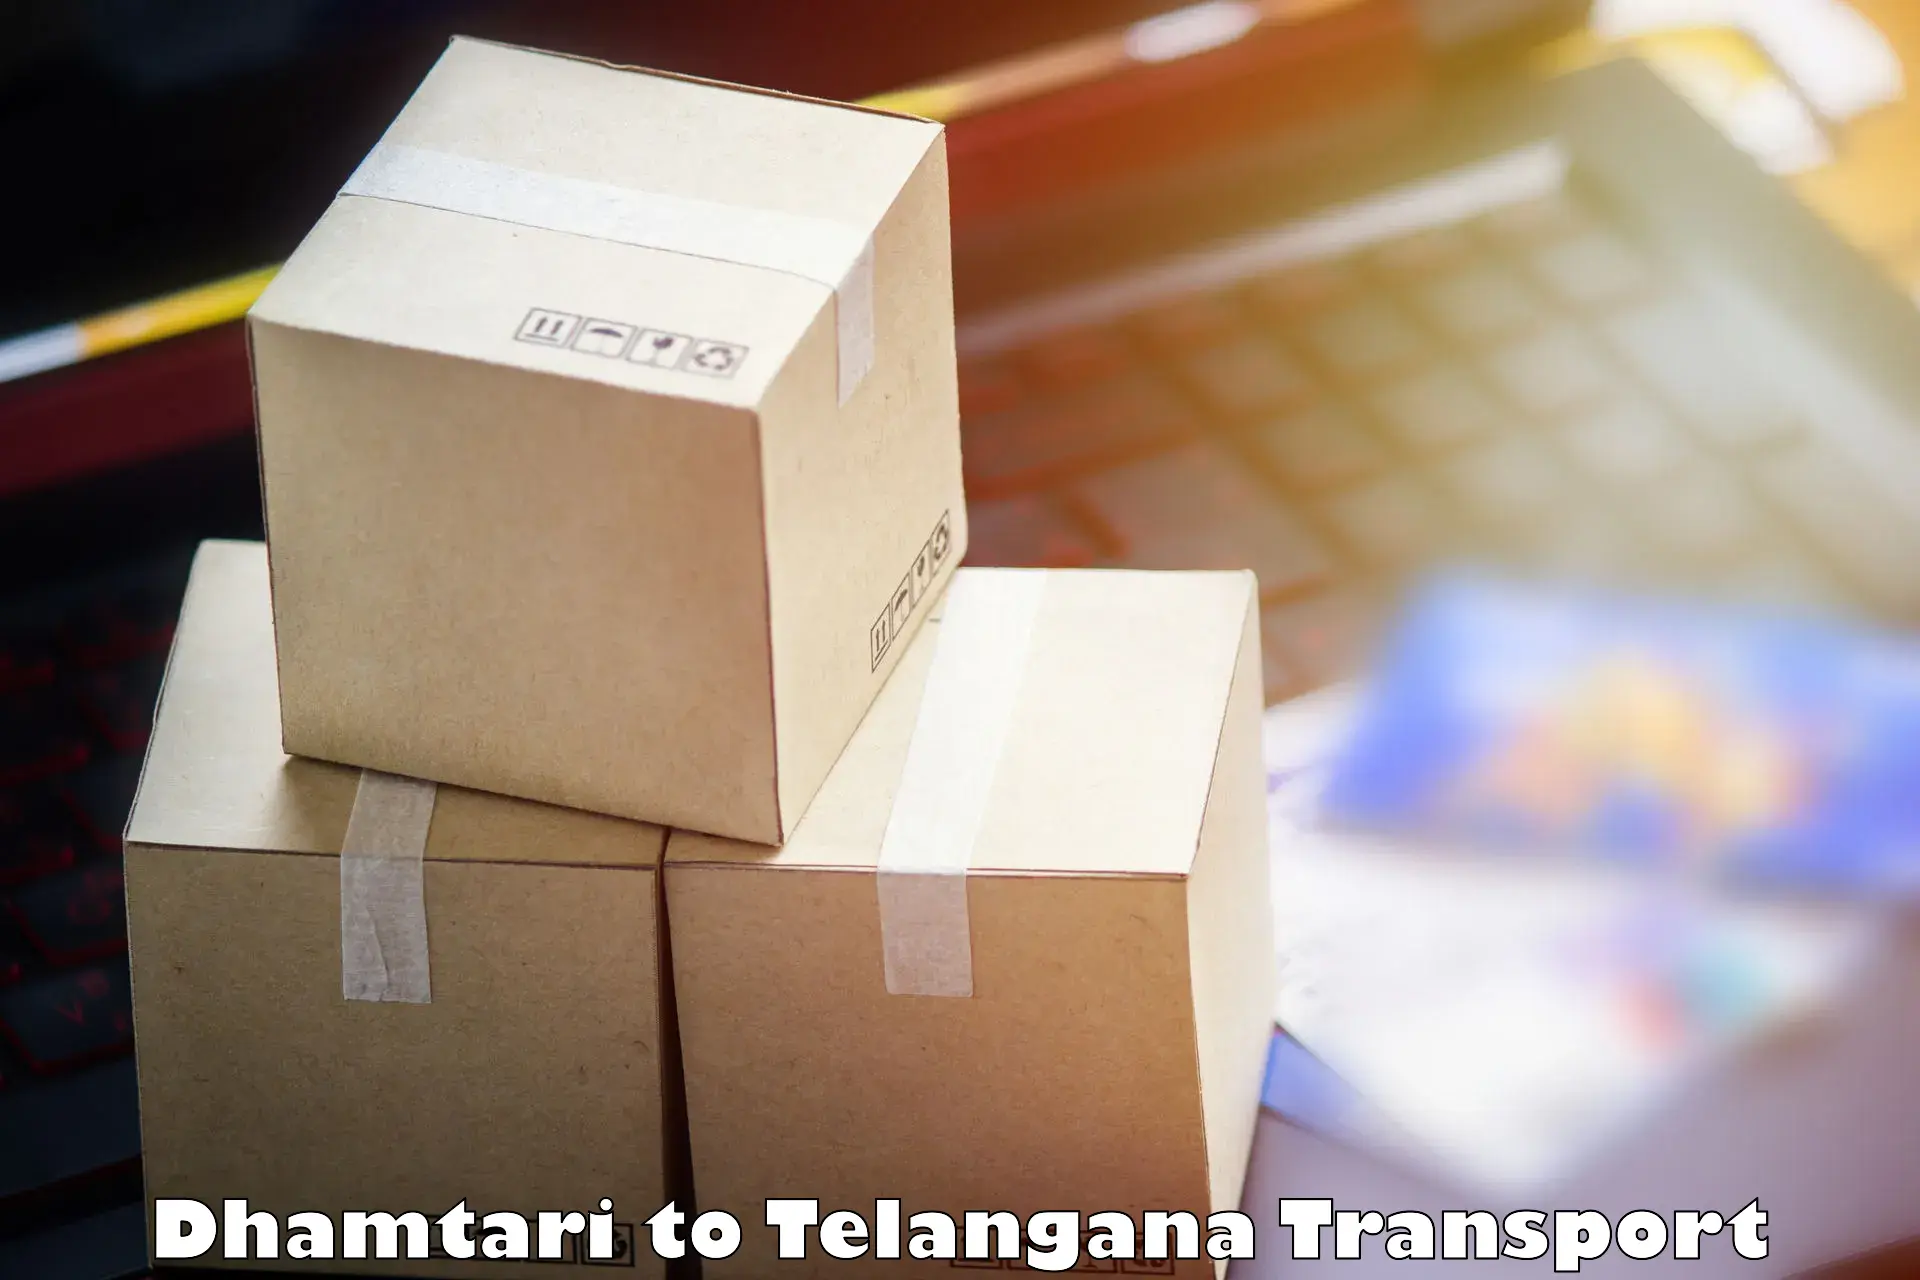 Shipping services Dhamtari to Telangana